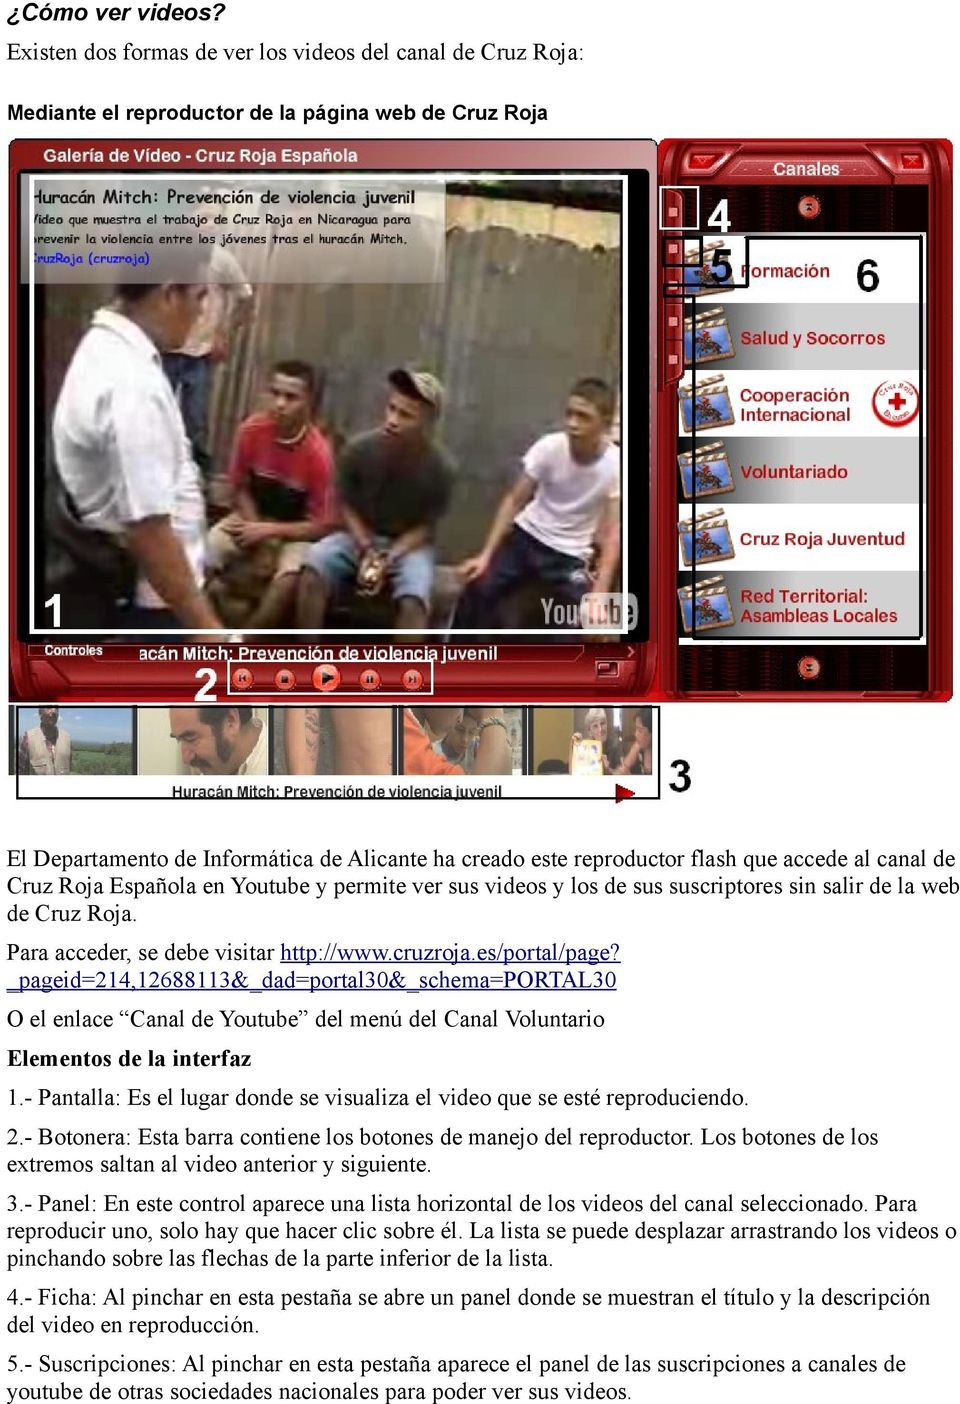 accede al canal de Cruz Roja Española en Youtube y permite ver sus videos y los de sus suscriptores sin salir de la web de Cruz Roja. Para acceder, se debe visitar http://www.cruzroja.es/portal/page?